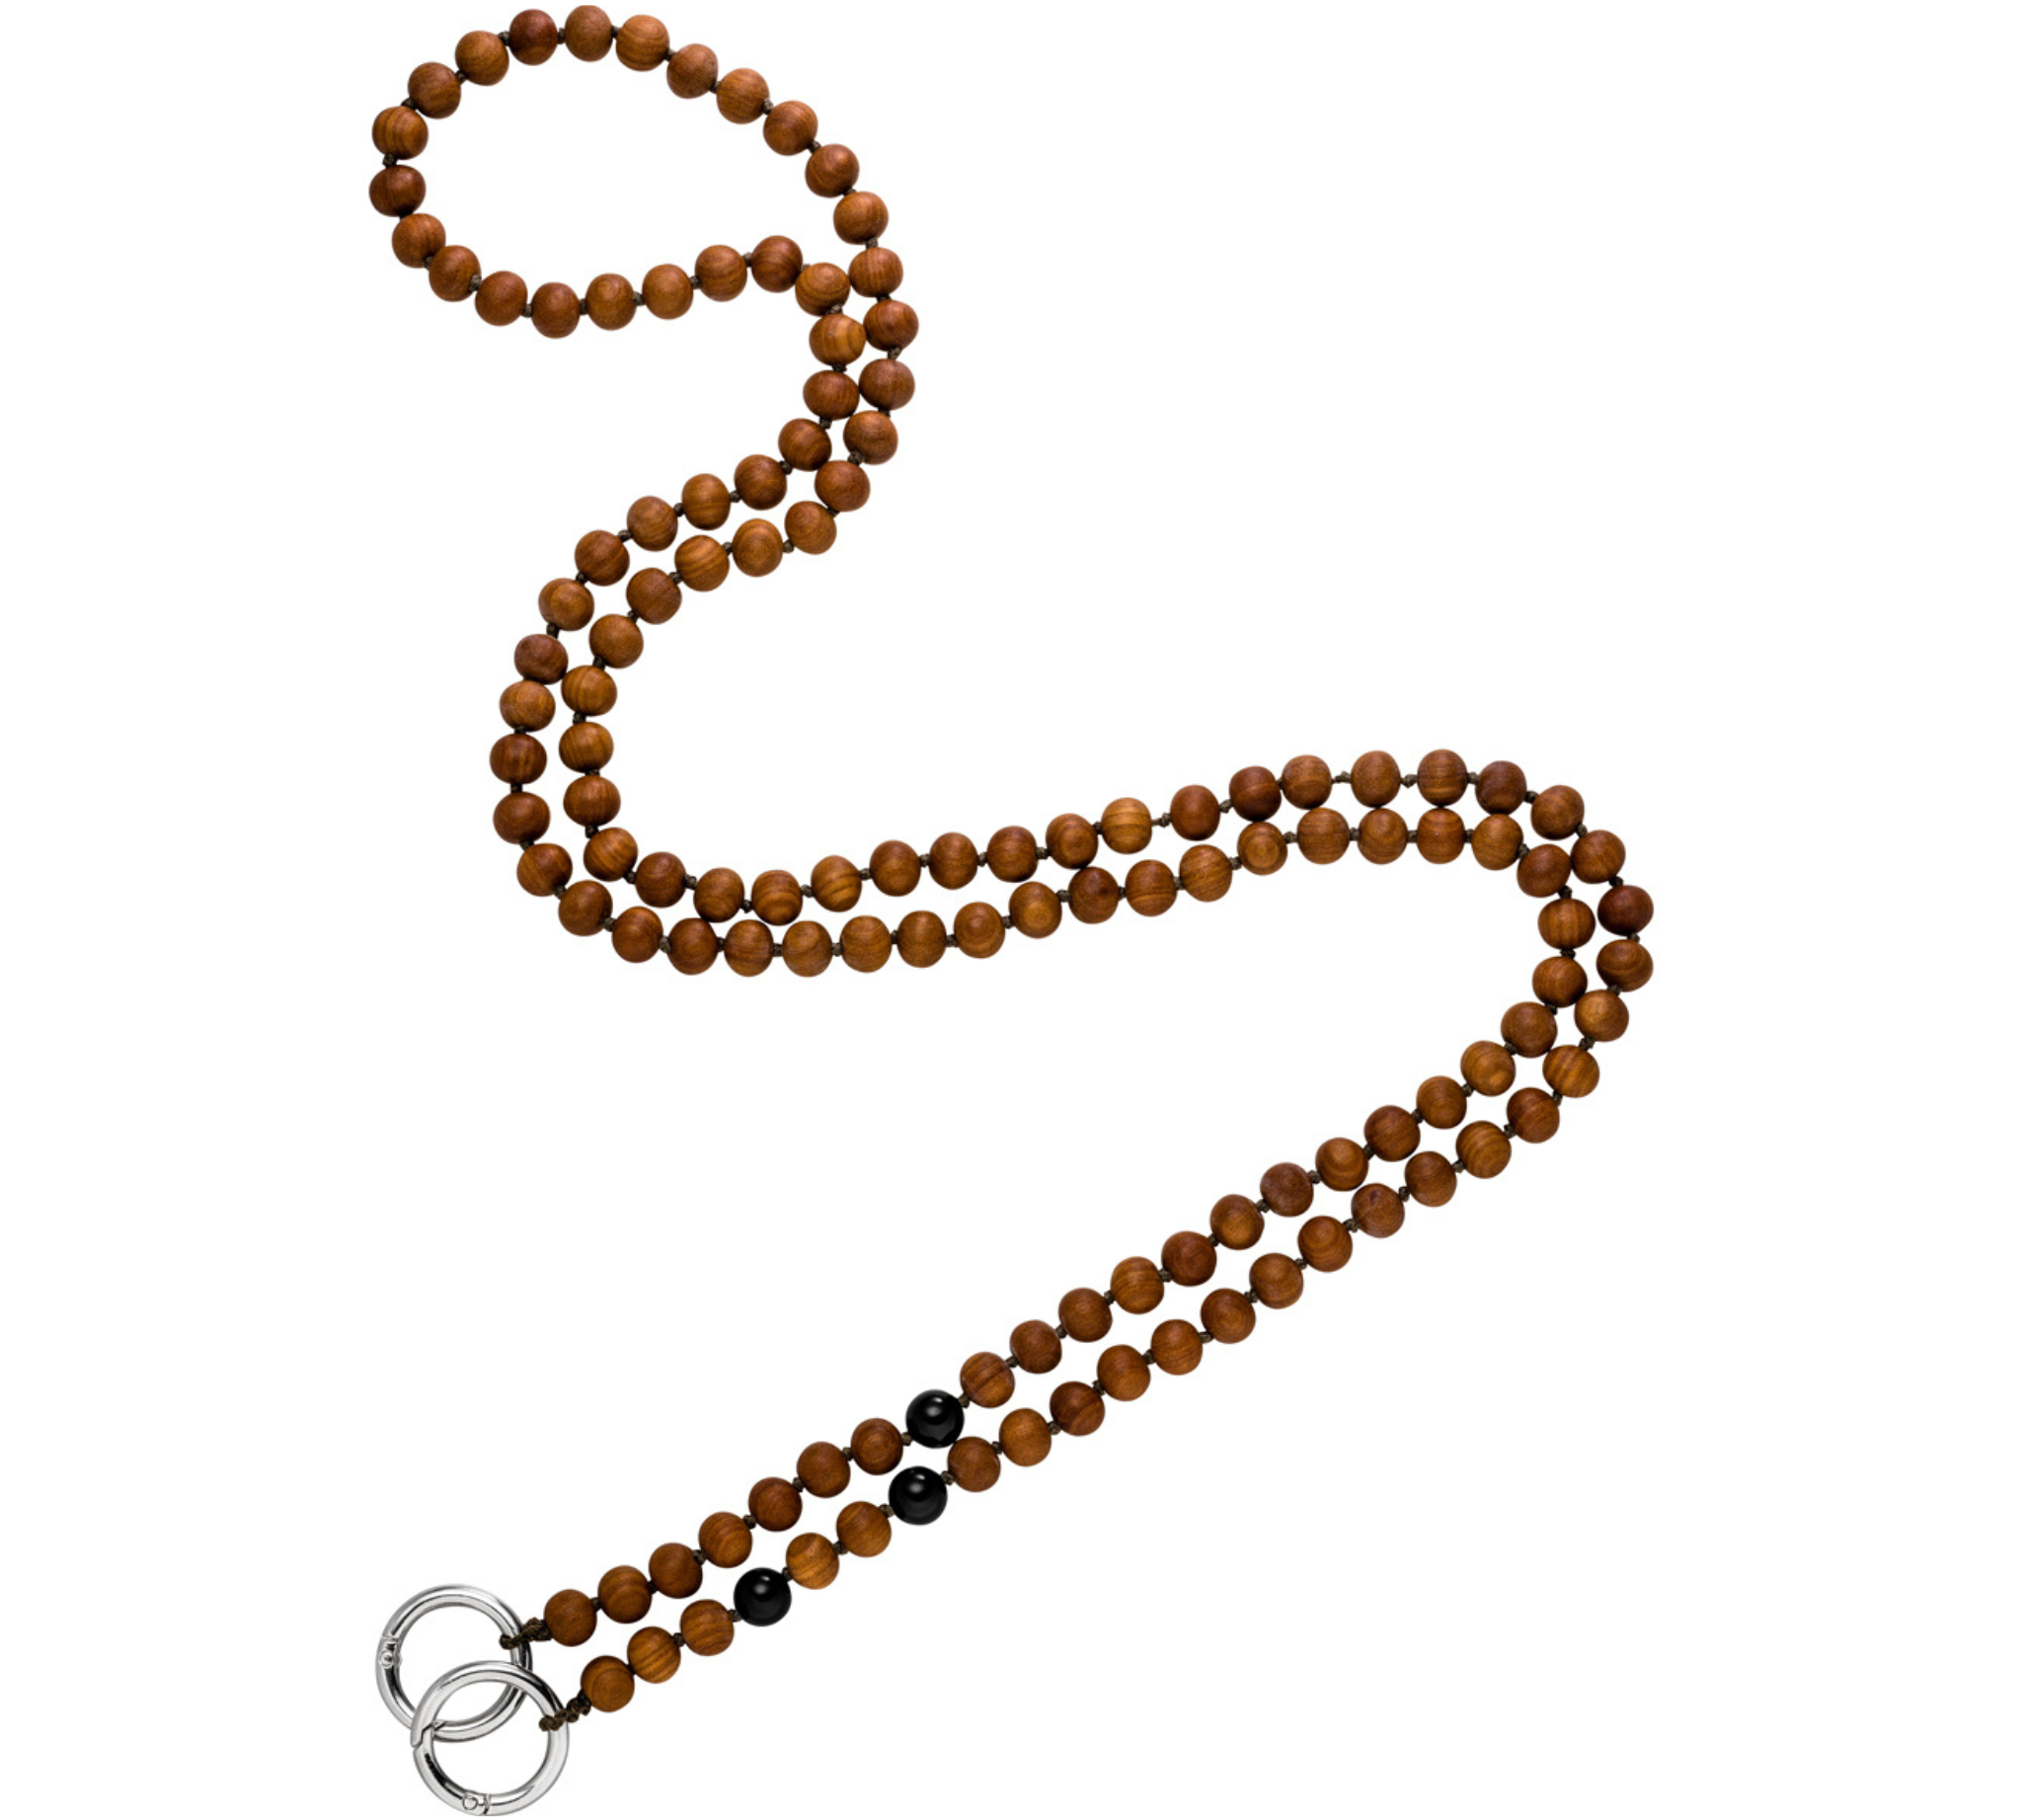 Lange Handykette aus Sandelholz Perlen und drei glänzenden Onyx Edelsteinkugeln. 140 cm lang.